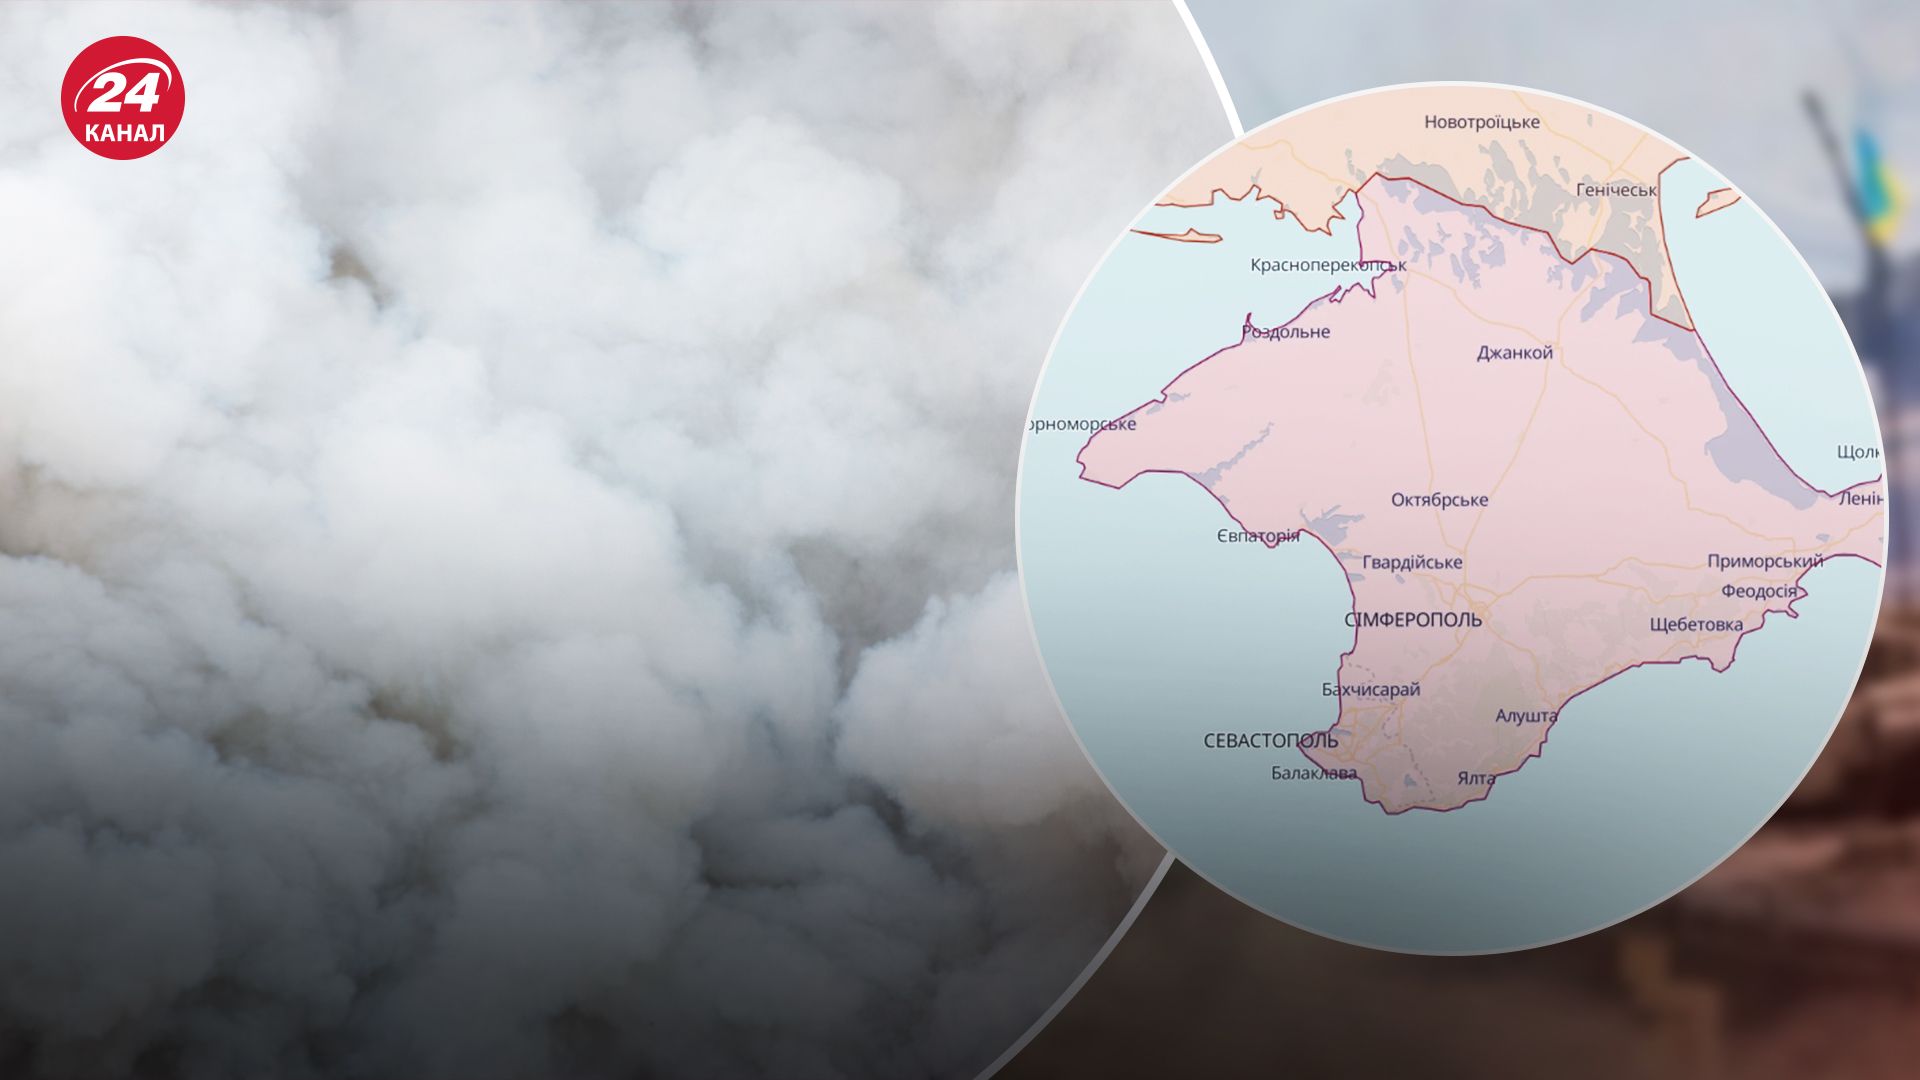 Виднеется дым в районе бухт: в Крыму объявили воздушную тревогу - 24 Канал